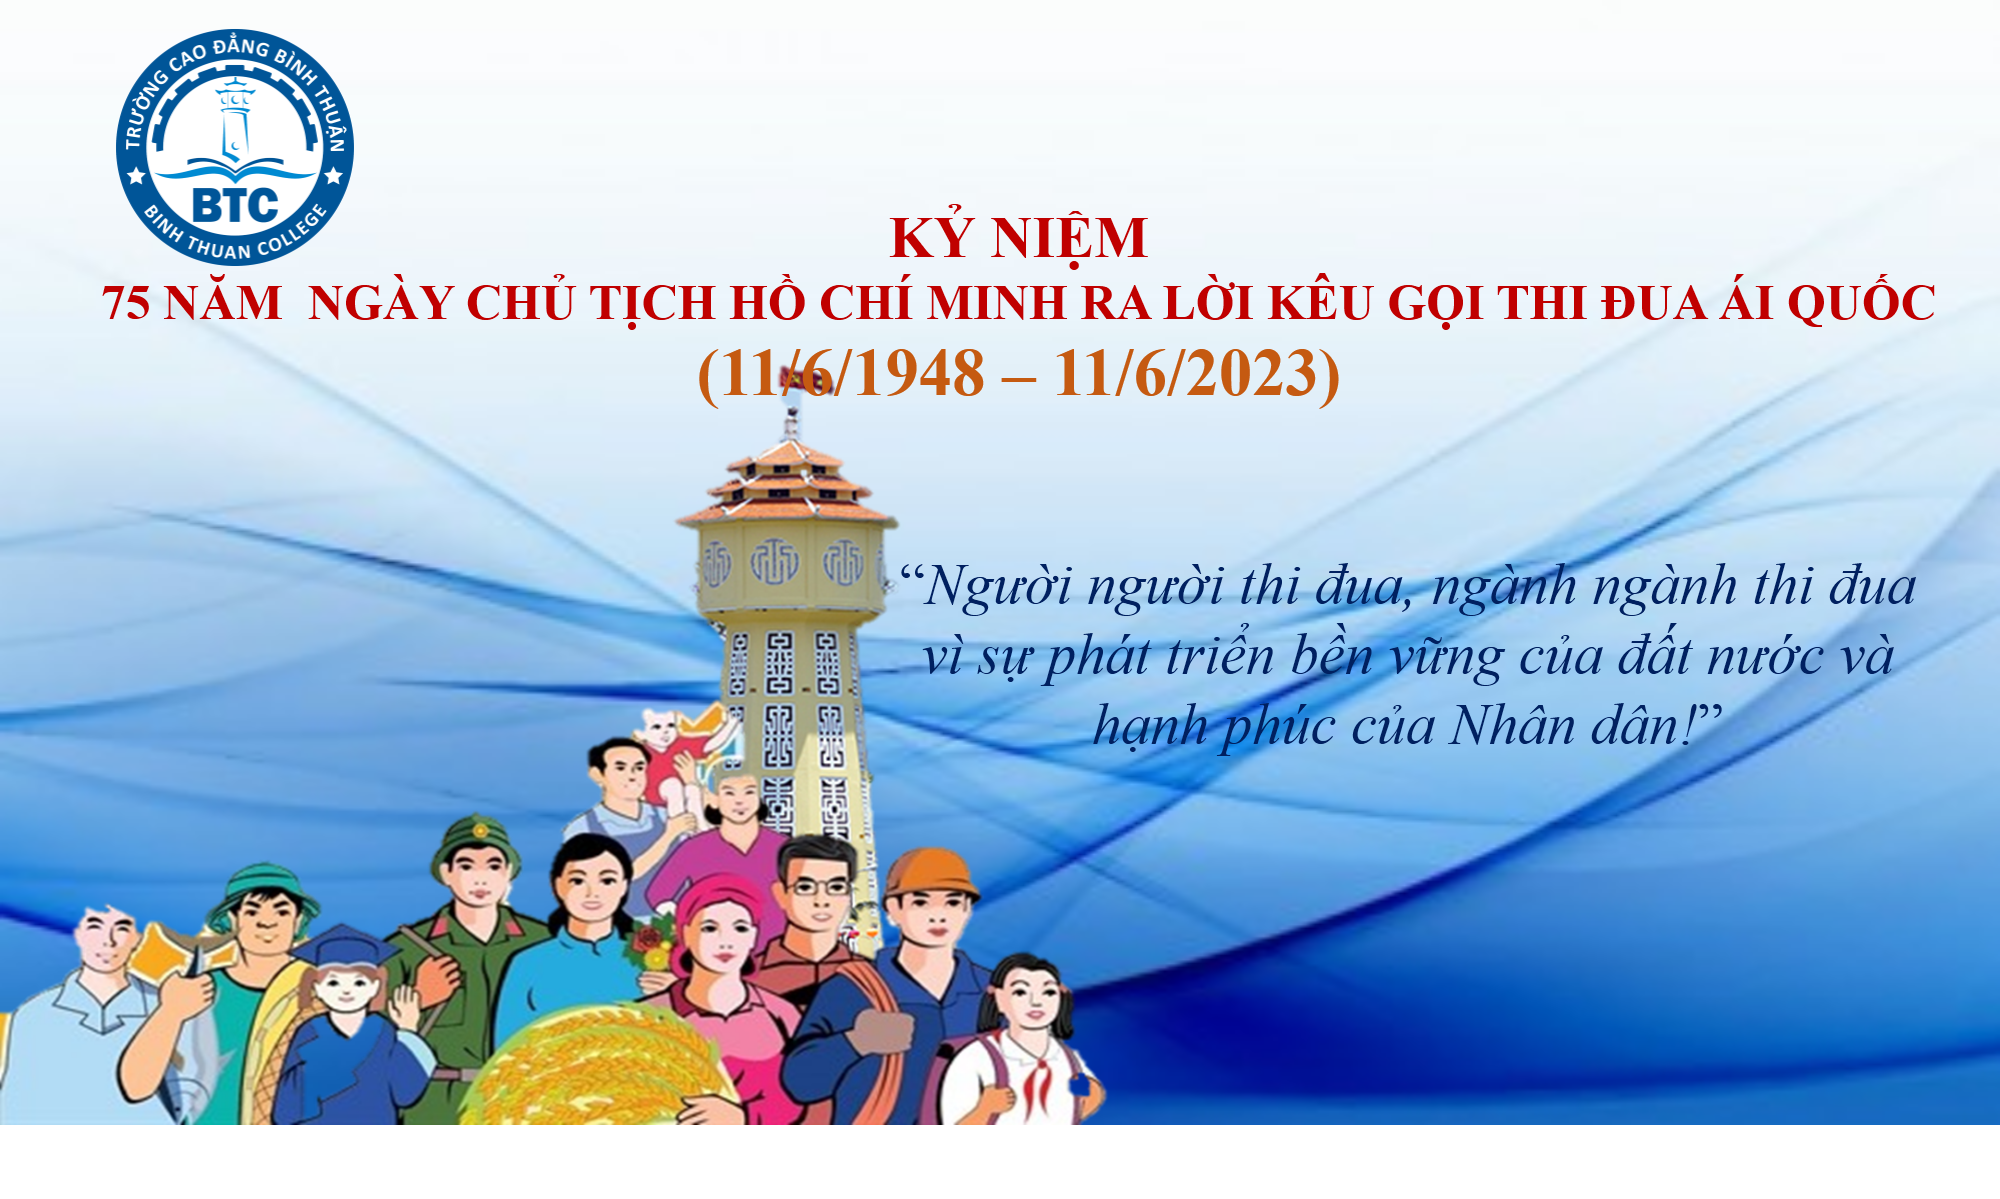 Đề cương tuyên truyền ngày Chủ Tịch Hồ Chí Minh ra lời kêu gọi thi đua ái quốc